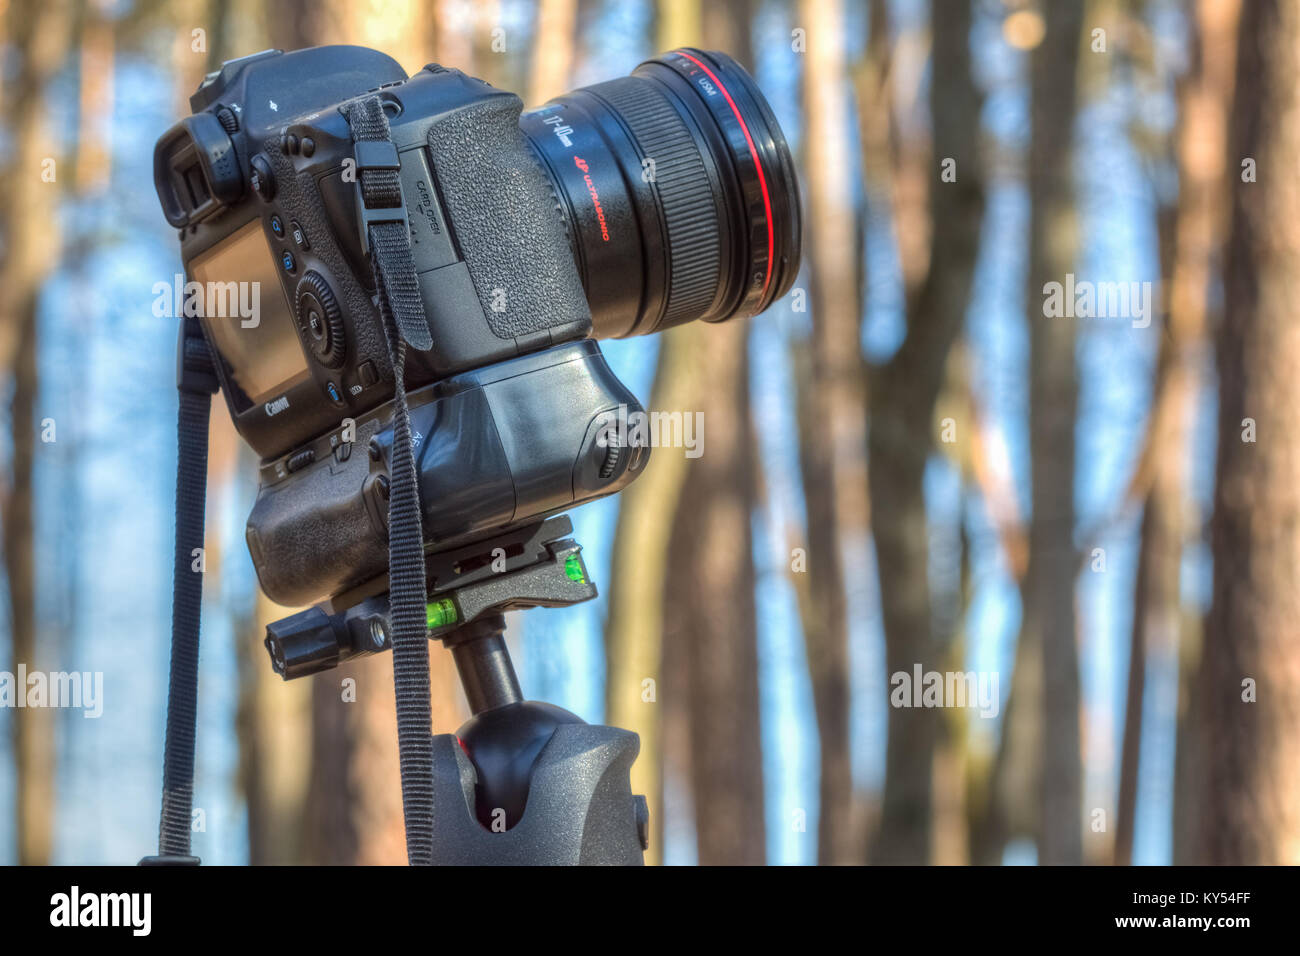 Gomel, Bielorussia - Marzo 29, 2016: una fotocamera digitale Canon EOS 6D con un obiettivo grandangolare Canon EF 17-40mm f/4L USM fissata su un treppiede Foto Stock